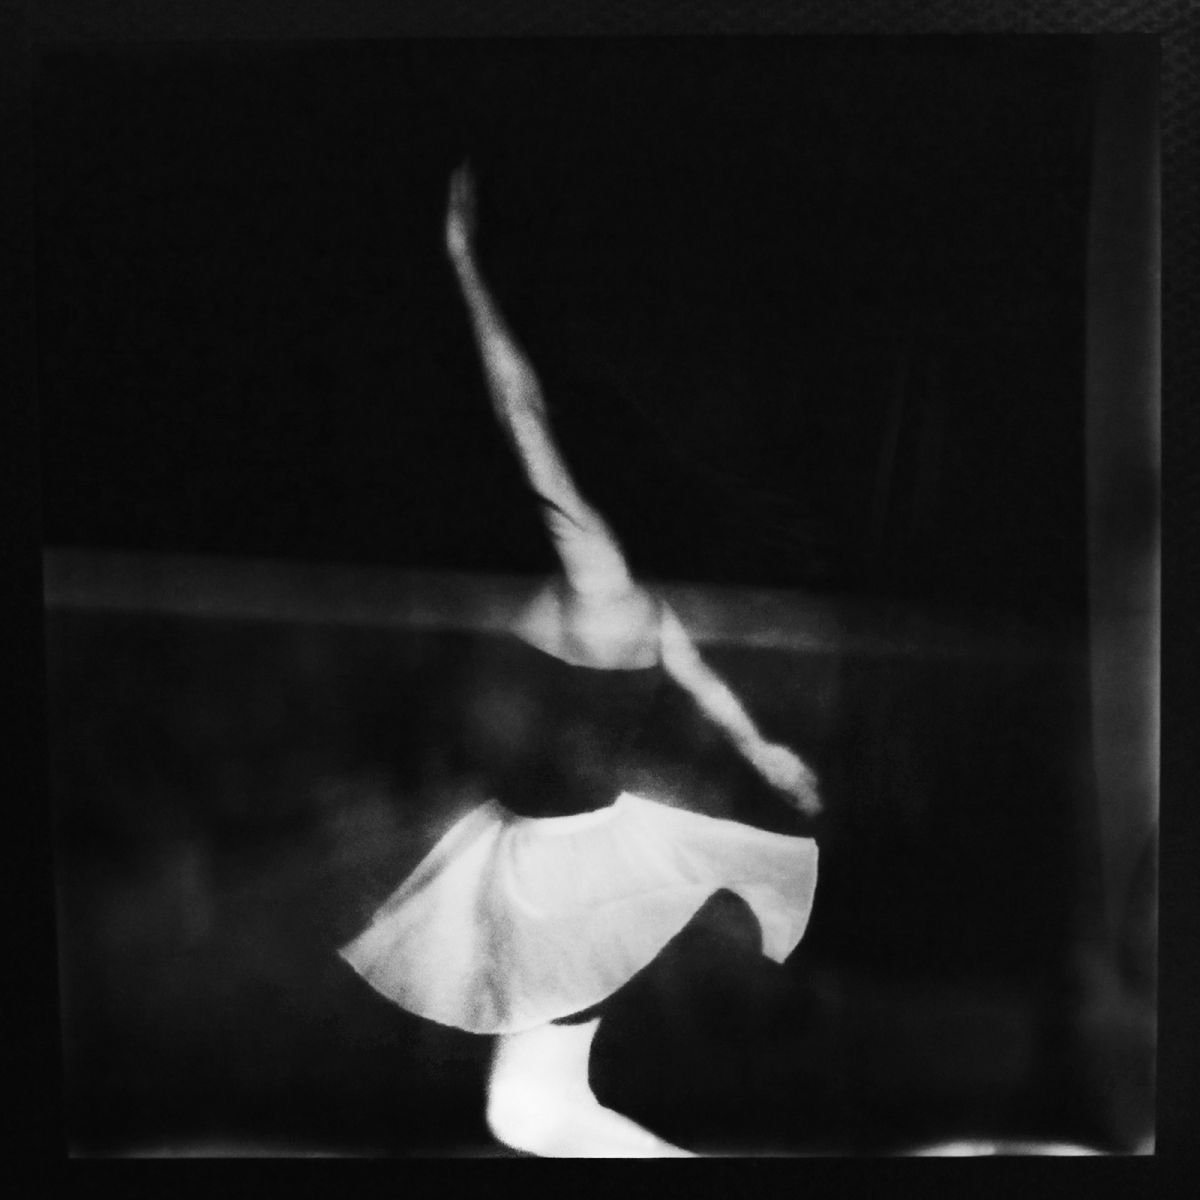 Polaroid 17 by Ricardo Reis